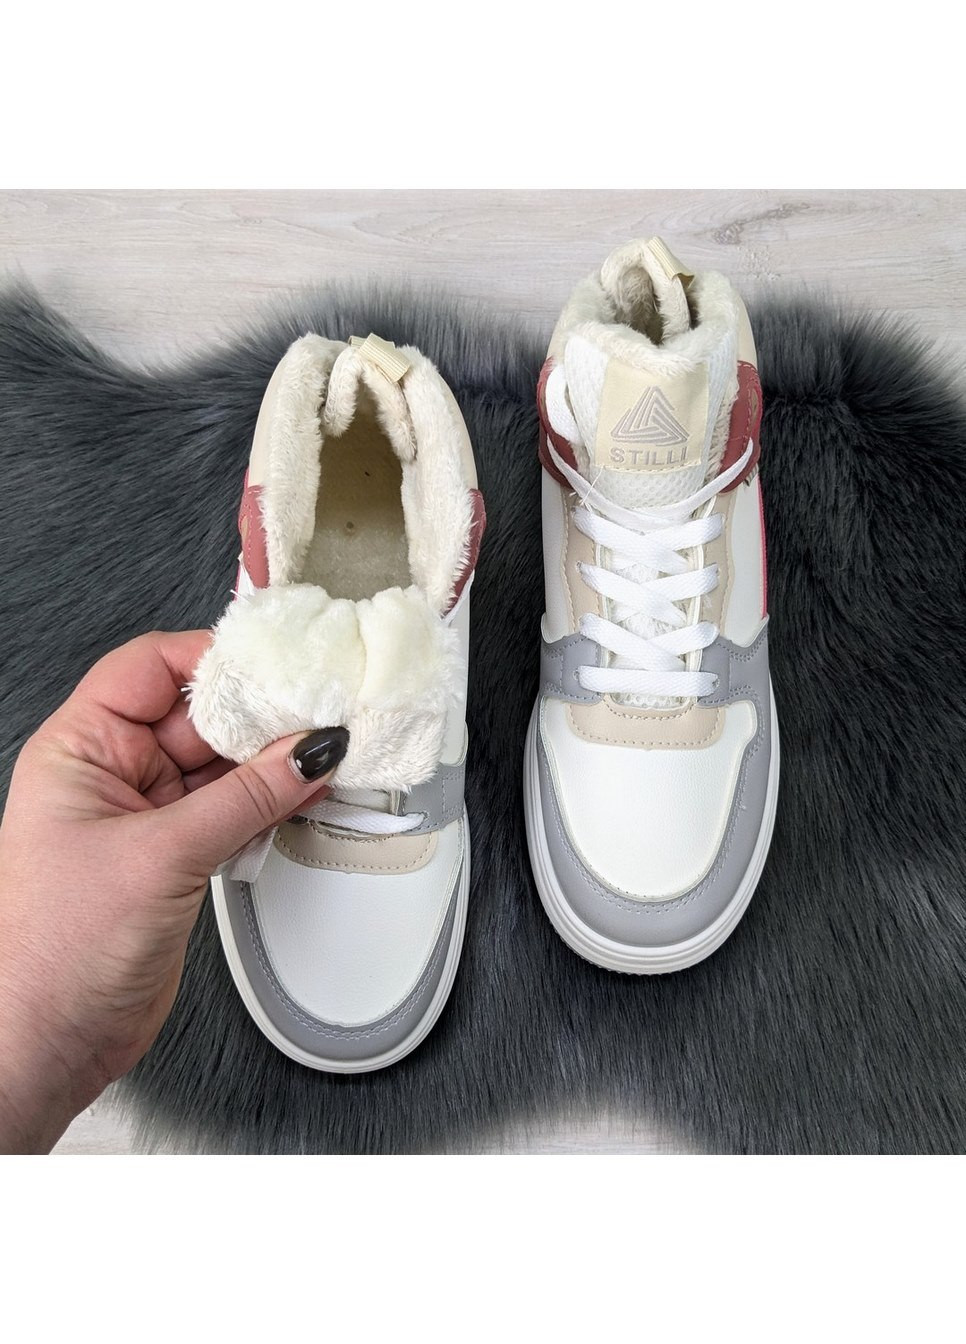 Зимние ботинки женские зимние Stilli из искусственной кожи